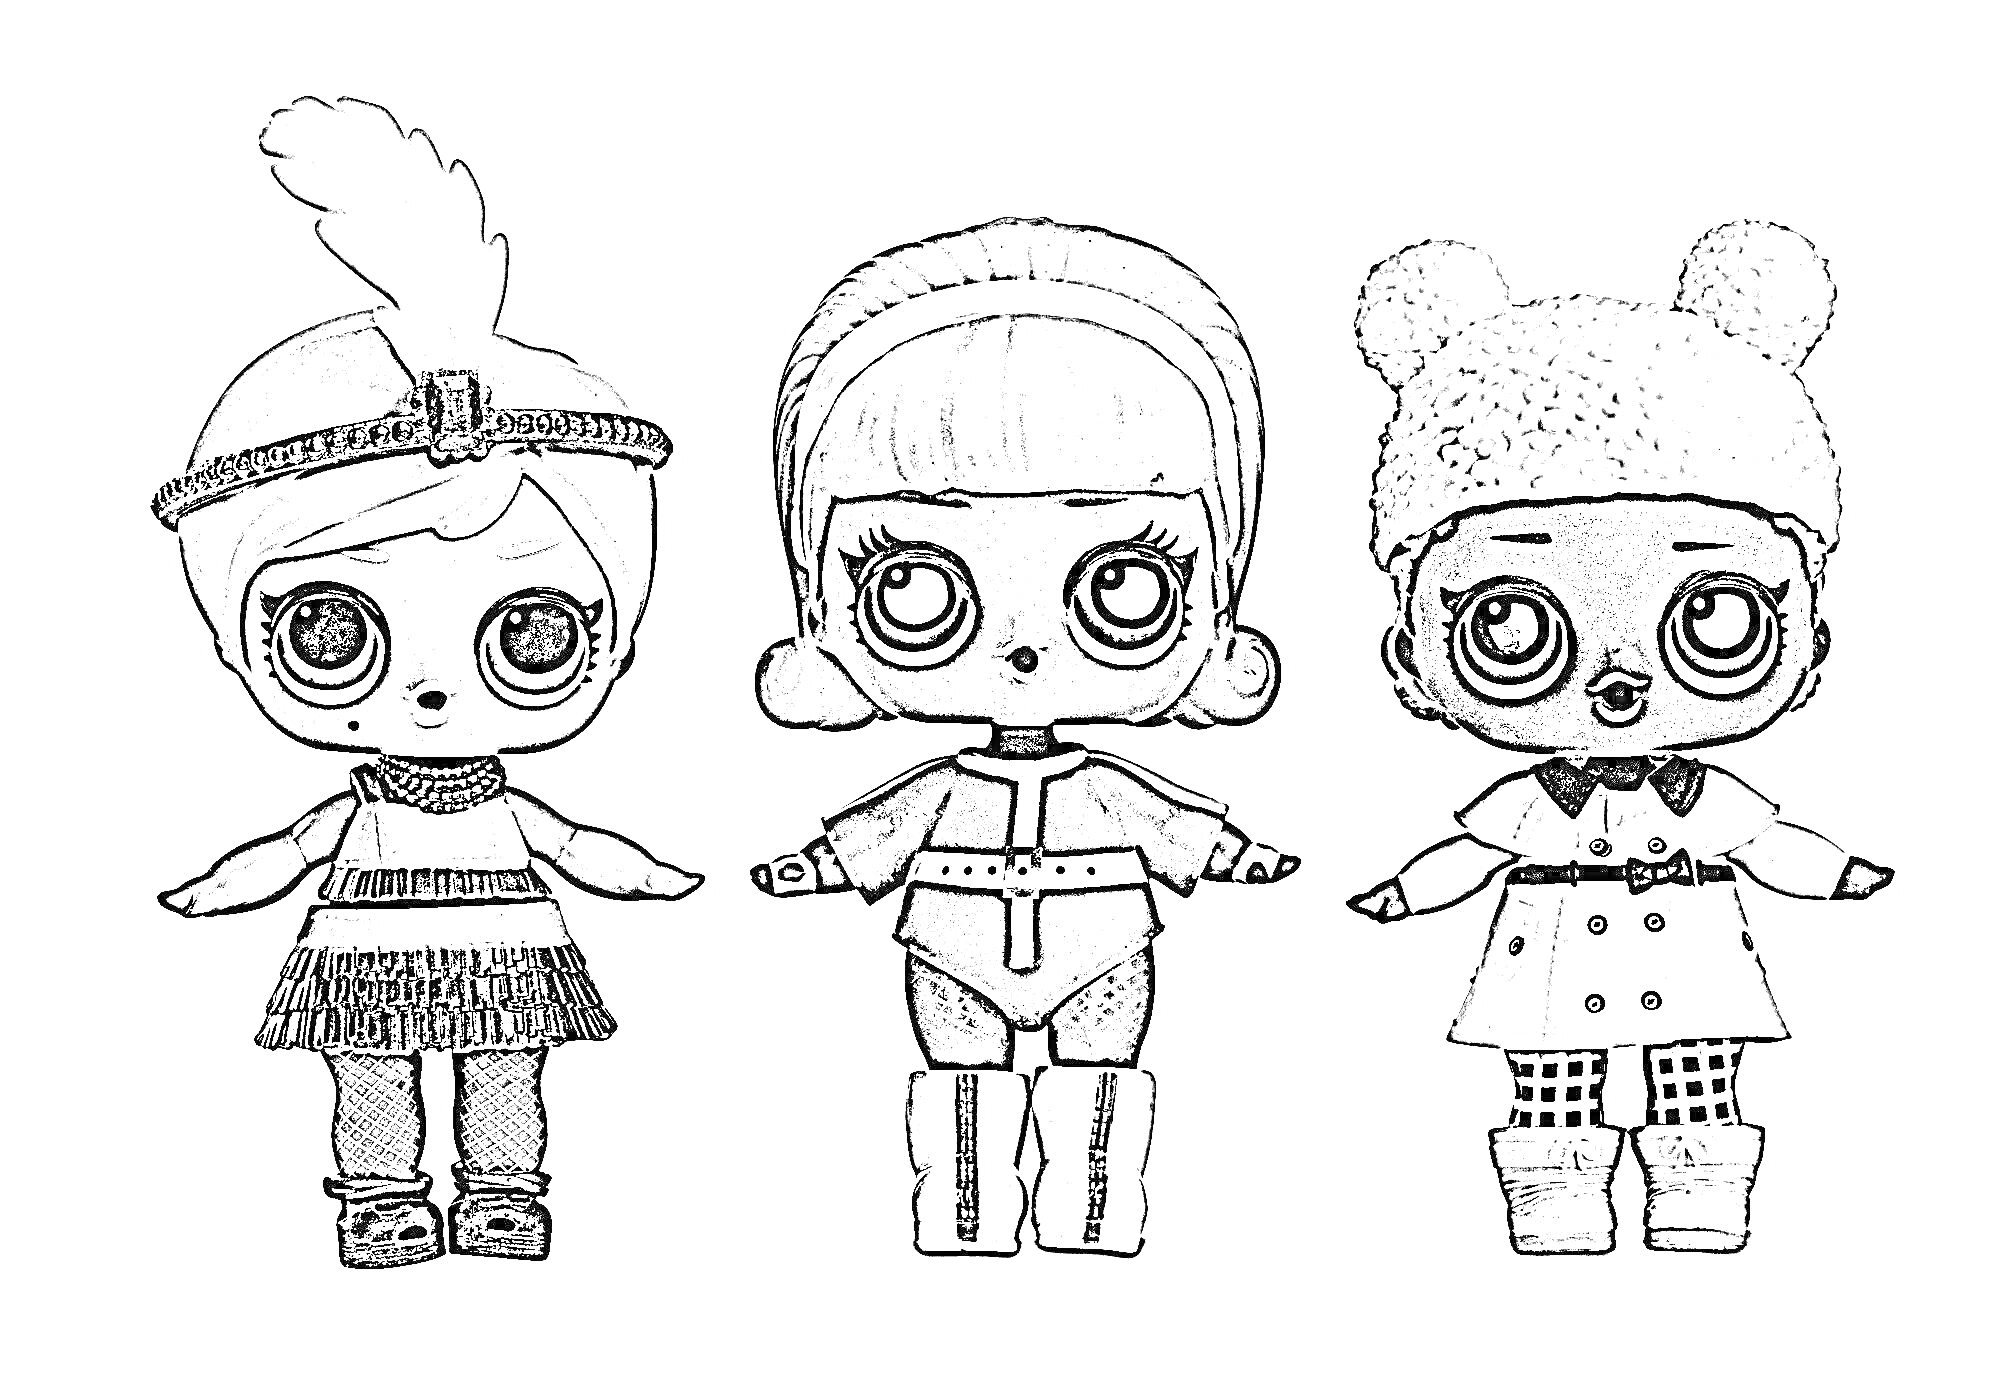 Раскраска Три куклы L.O.L. из зимней серии в теплой одежде: одна с помпоном на ободке, другая в водолазке и ботинках, третья в шапке с помпонами и пальто.